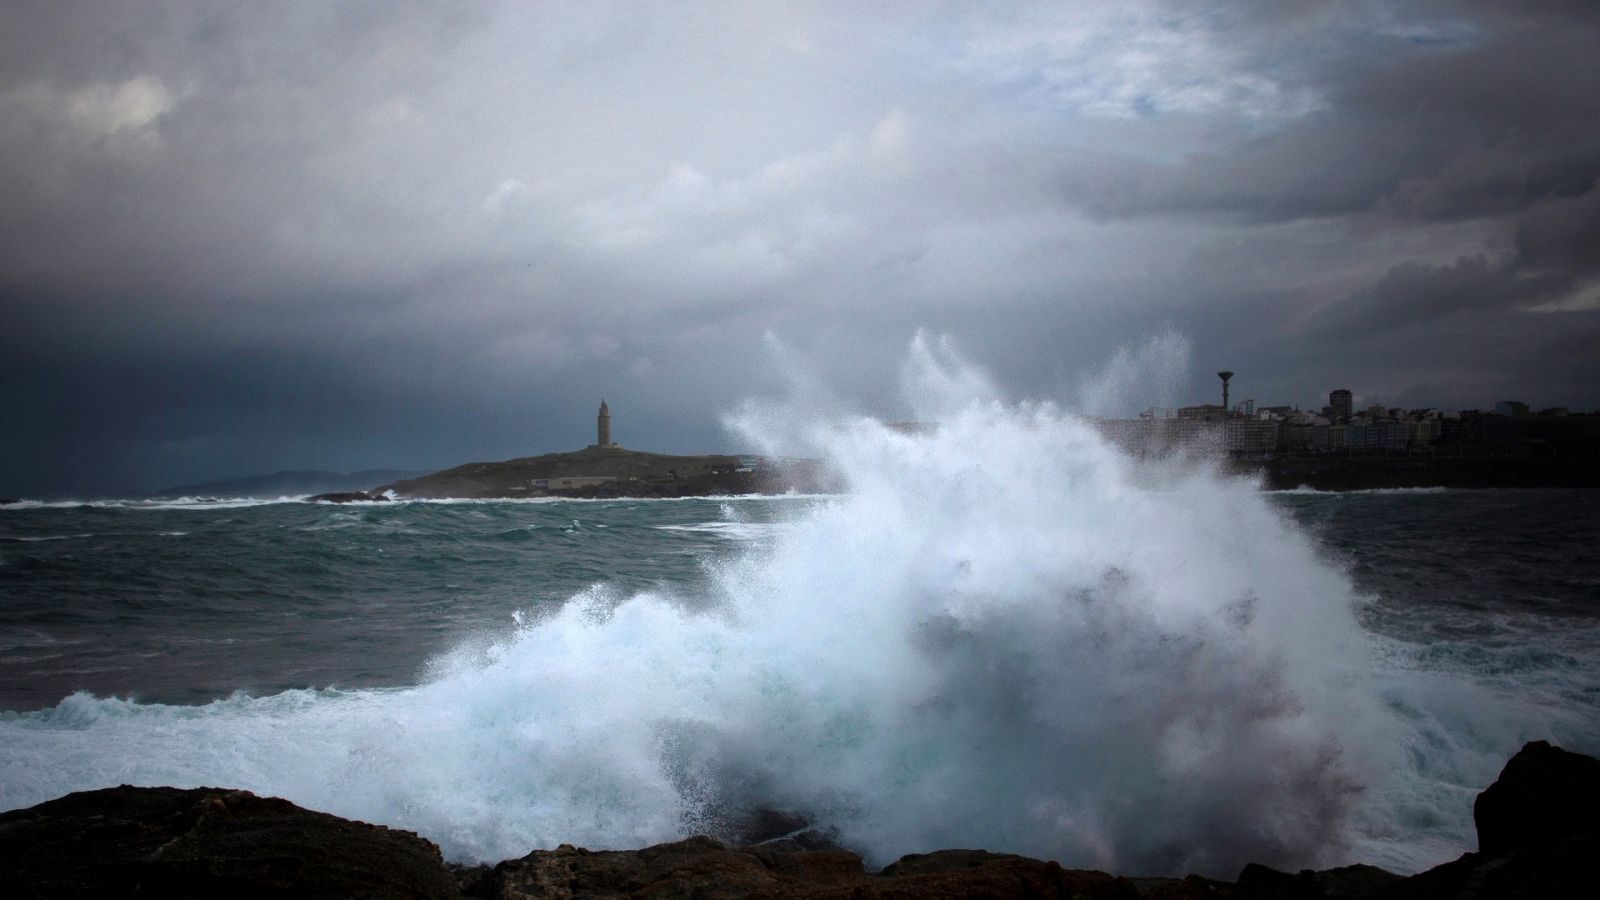 Las olas del mar golpean la costa de A Coruña, con la Torre de Hérculas al fondo a la izquierda